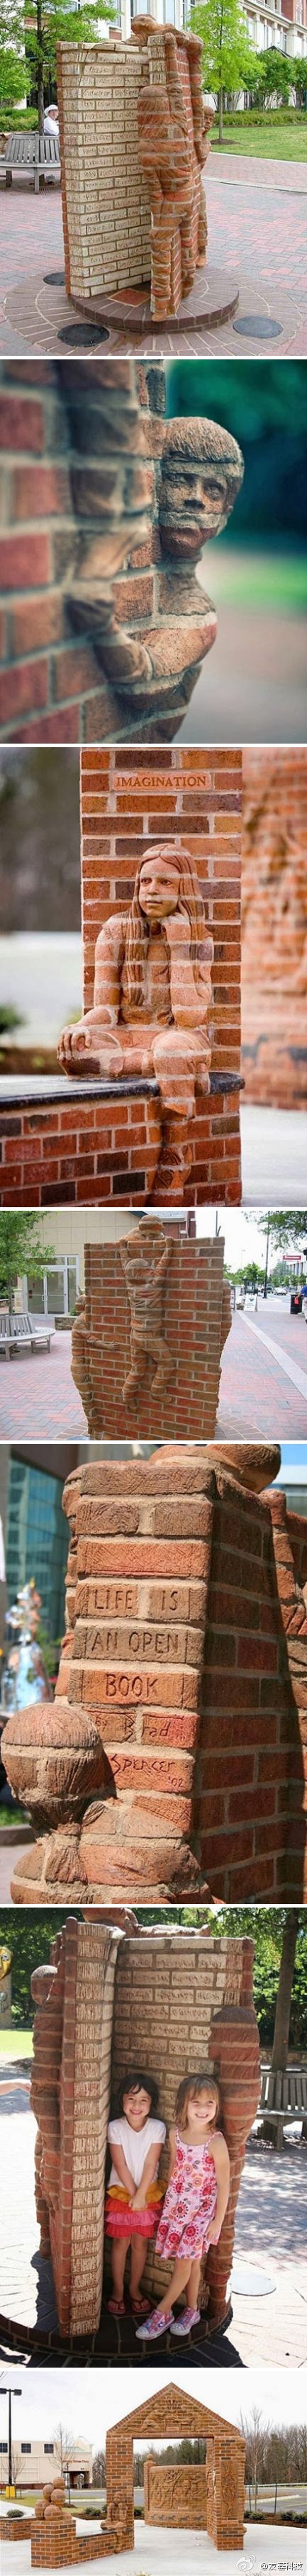 美国艺术家Brad Spence 创意砖雕作品